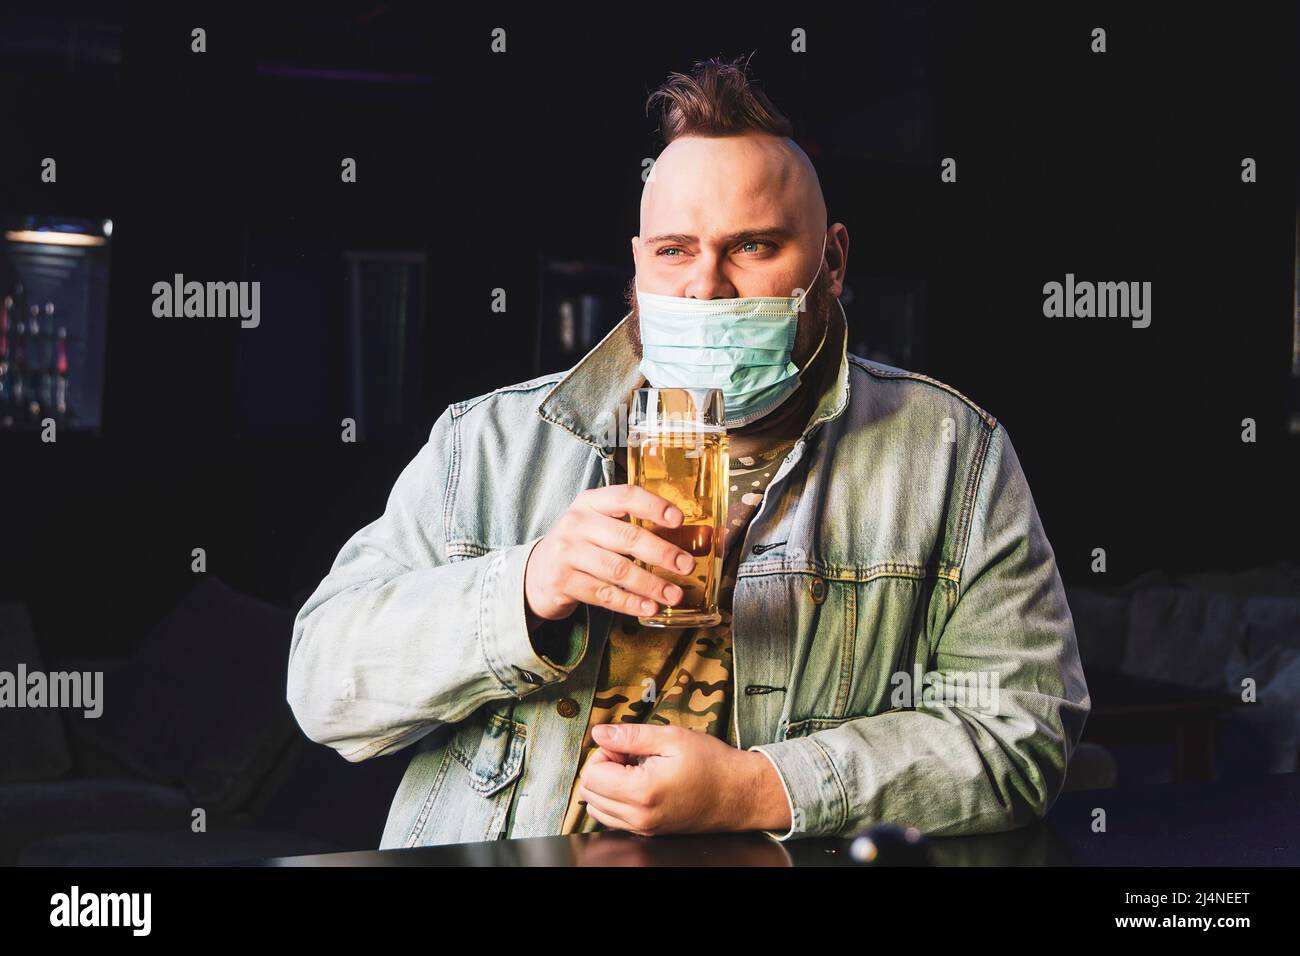 Ein Punk-Mann mit einem Mohawk, der eine Schutzmaske auf seinem Gesicht trägt, trinkt im Dunkeln Bier aus einem Glaskrug. Quarantäne in der Leiste. Alkoholverbot Stockfoto